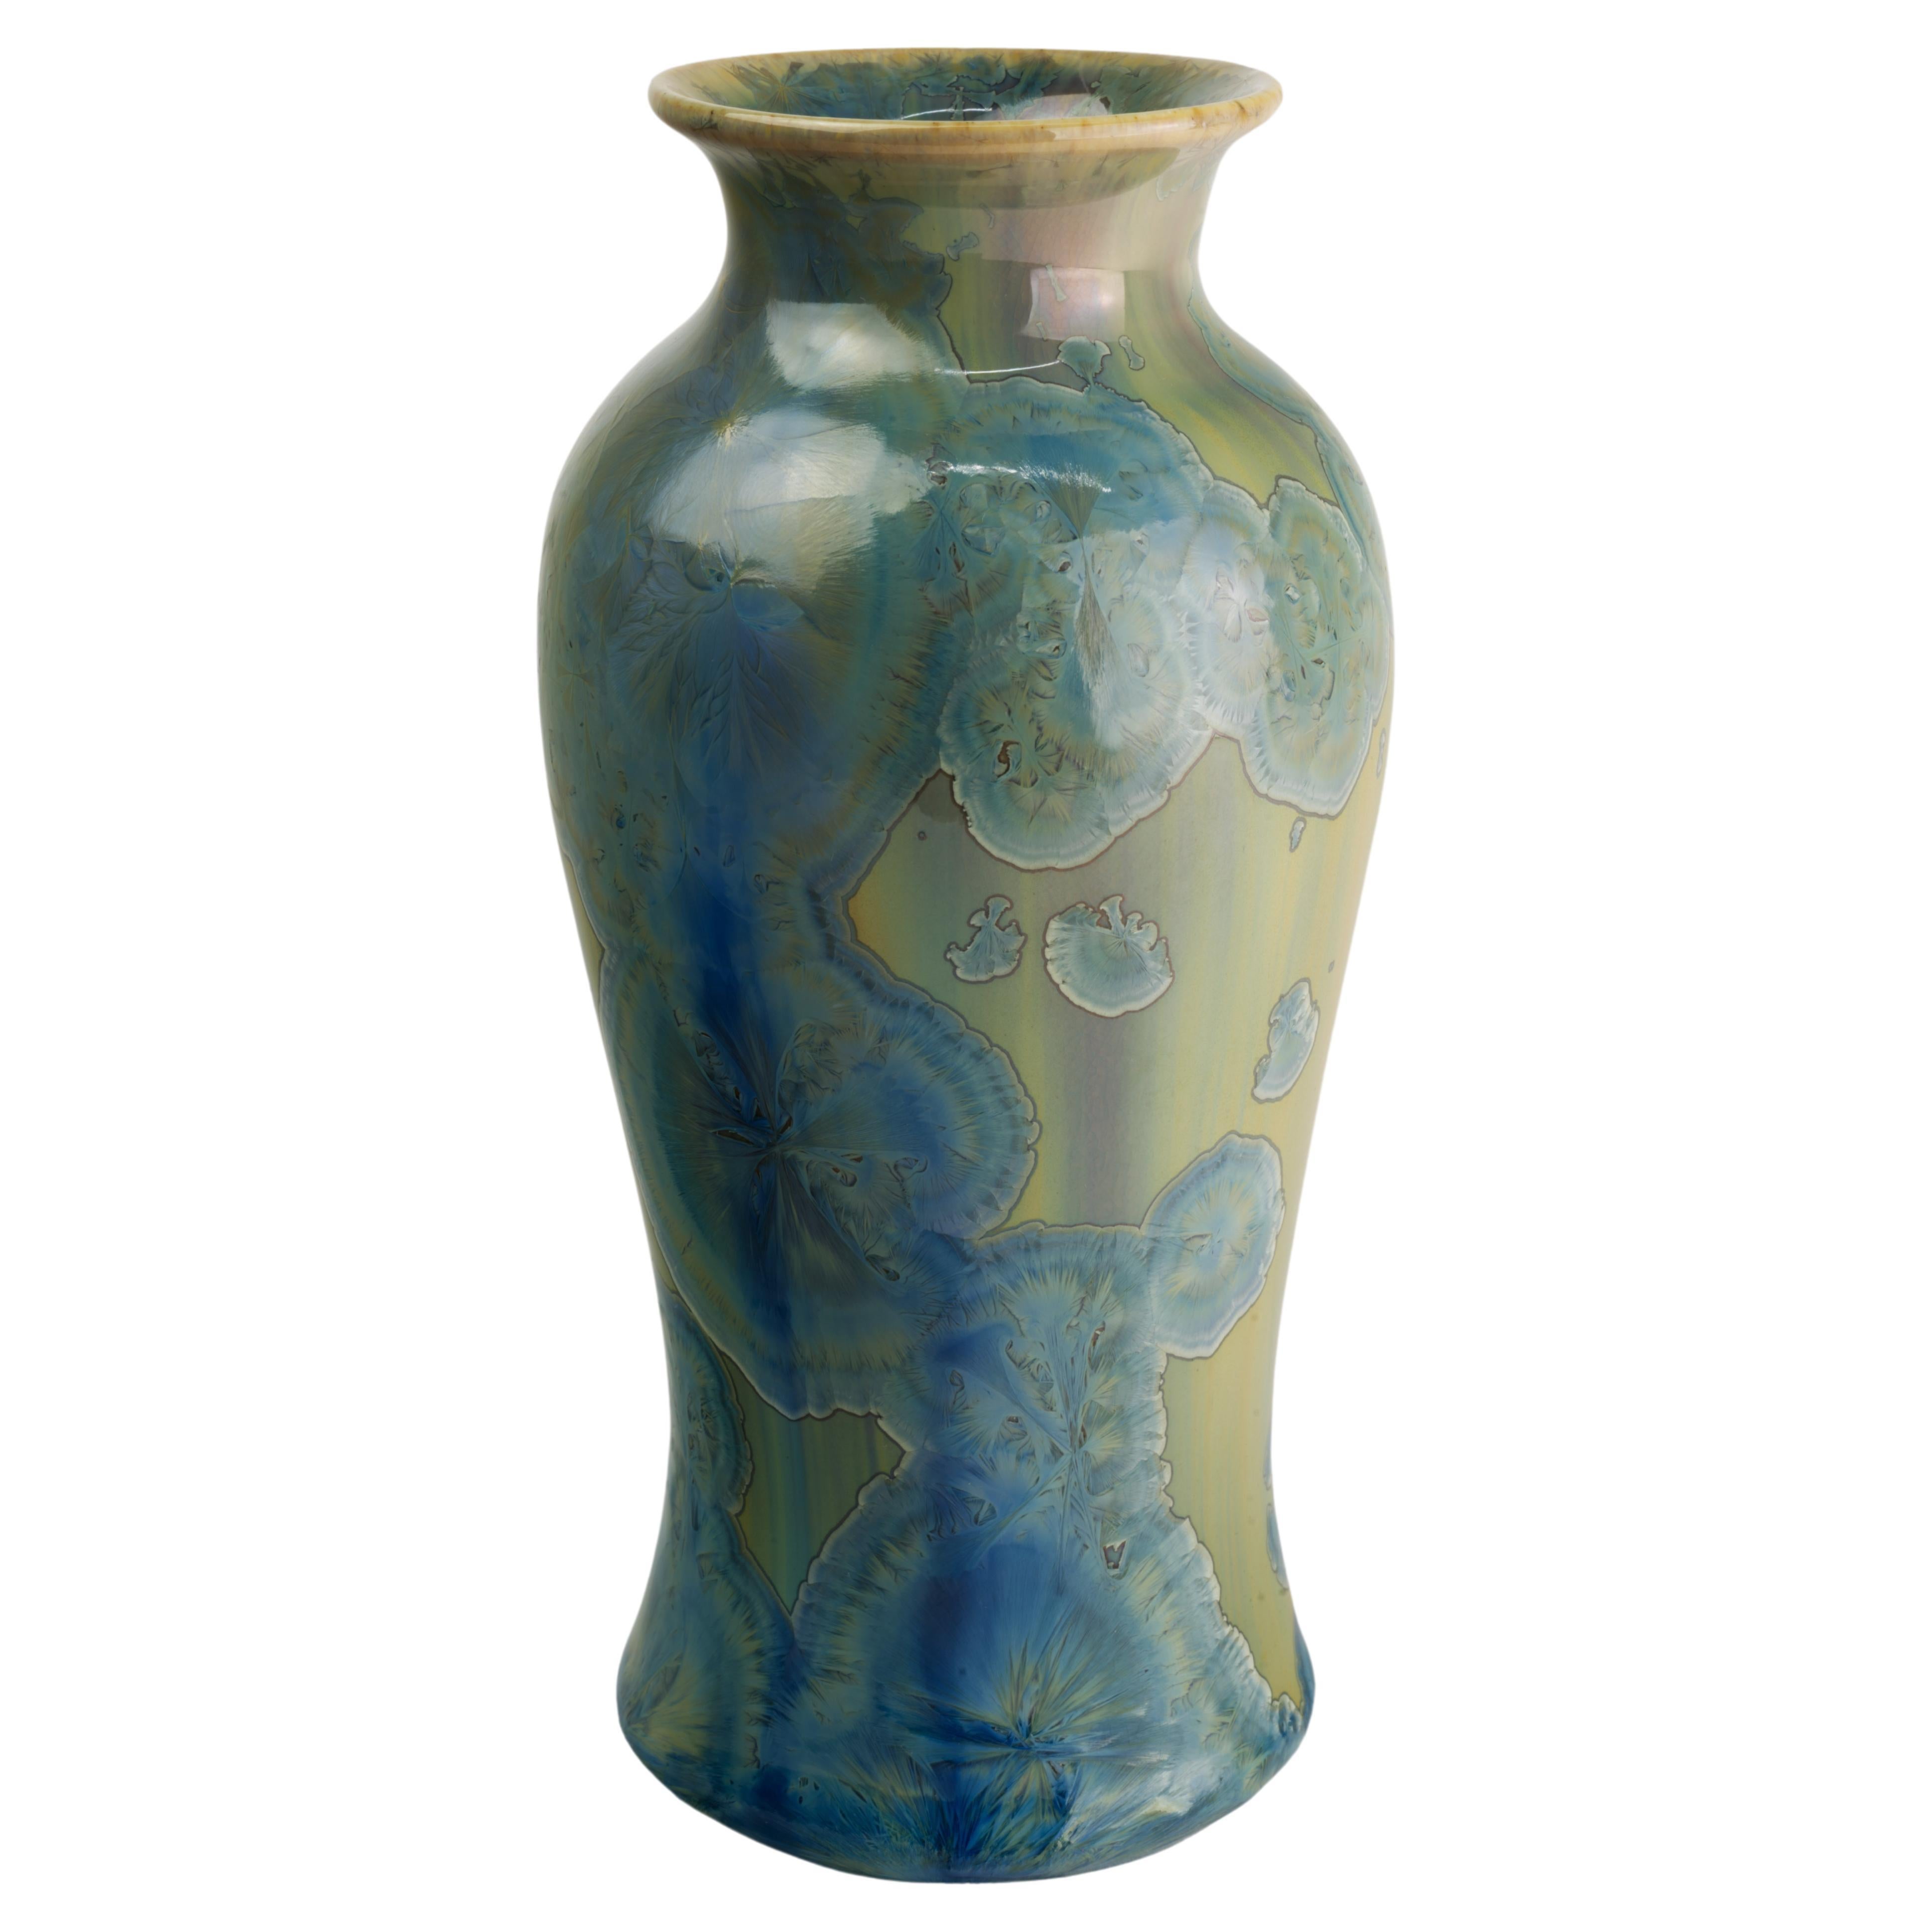 Leslie Ehrlich Crystalline Glaze Bud Vase Signed Art Pottery 